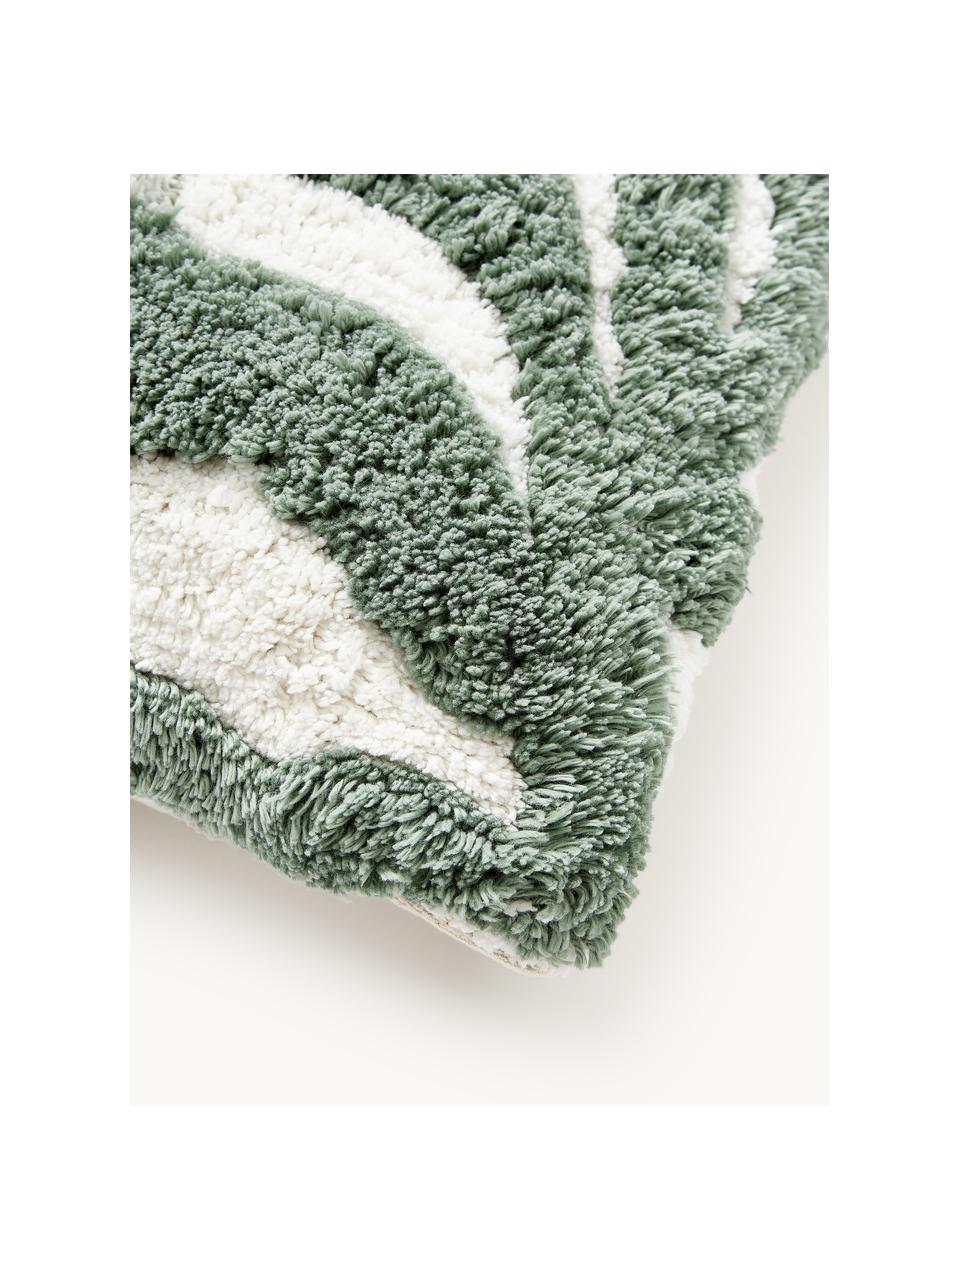 Baumwoll-Kissenhülle Sela mit getuftetem Pflanzen-Motiv, 100 % Baumwolle, Grün, Cremeweiss, B 45 x L 45 cm